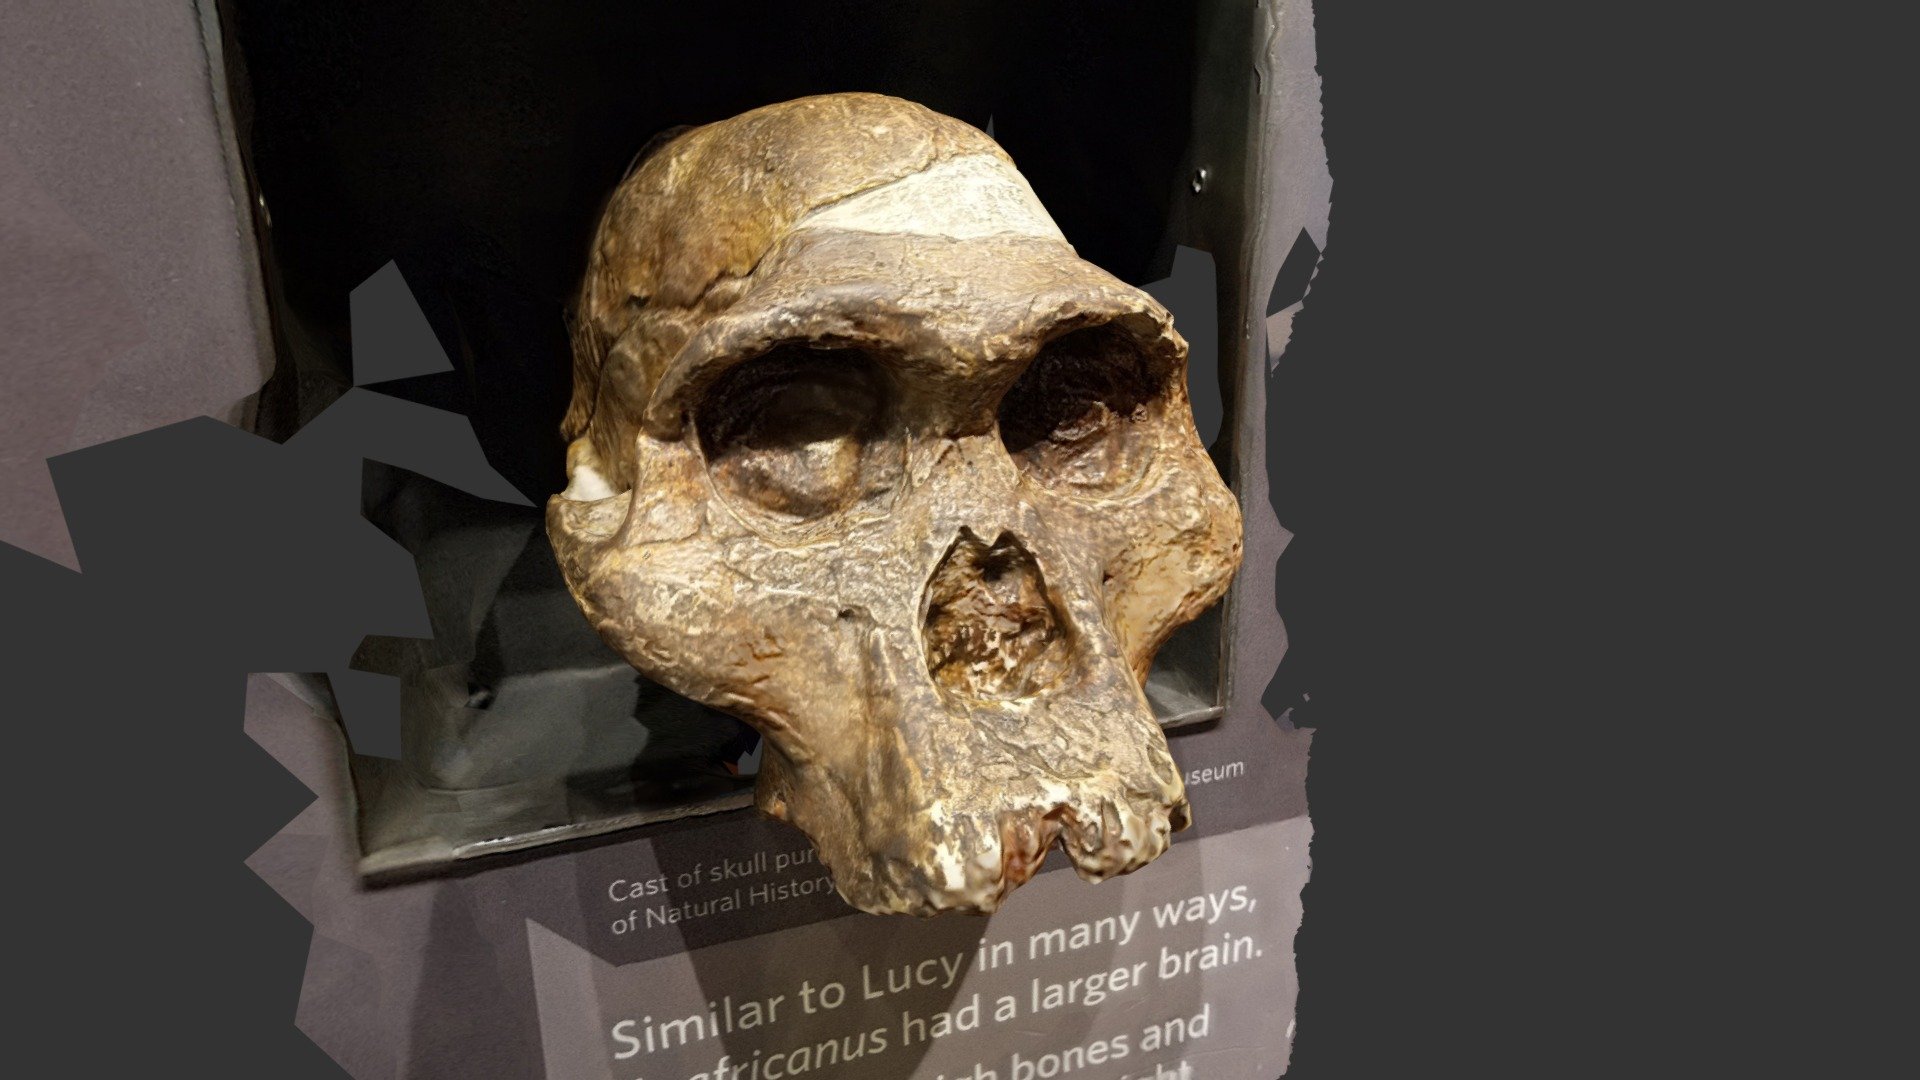 Australopithecus Africanus